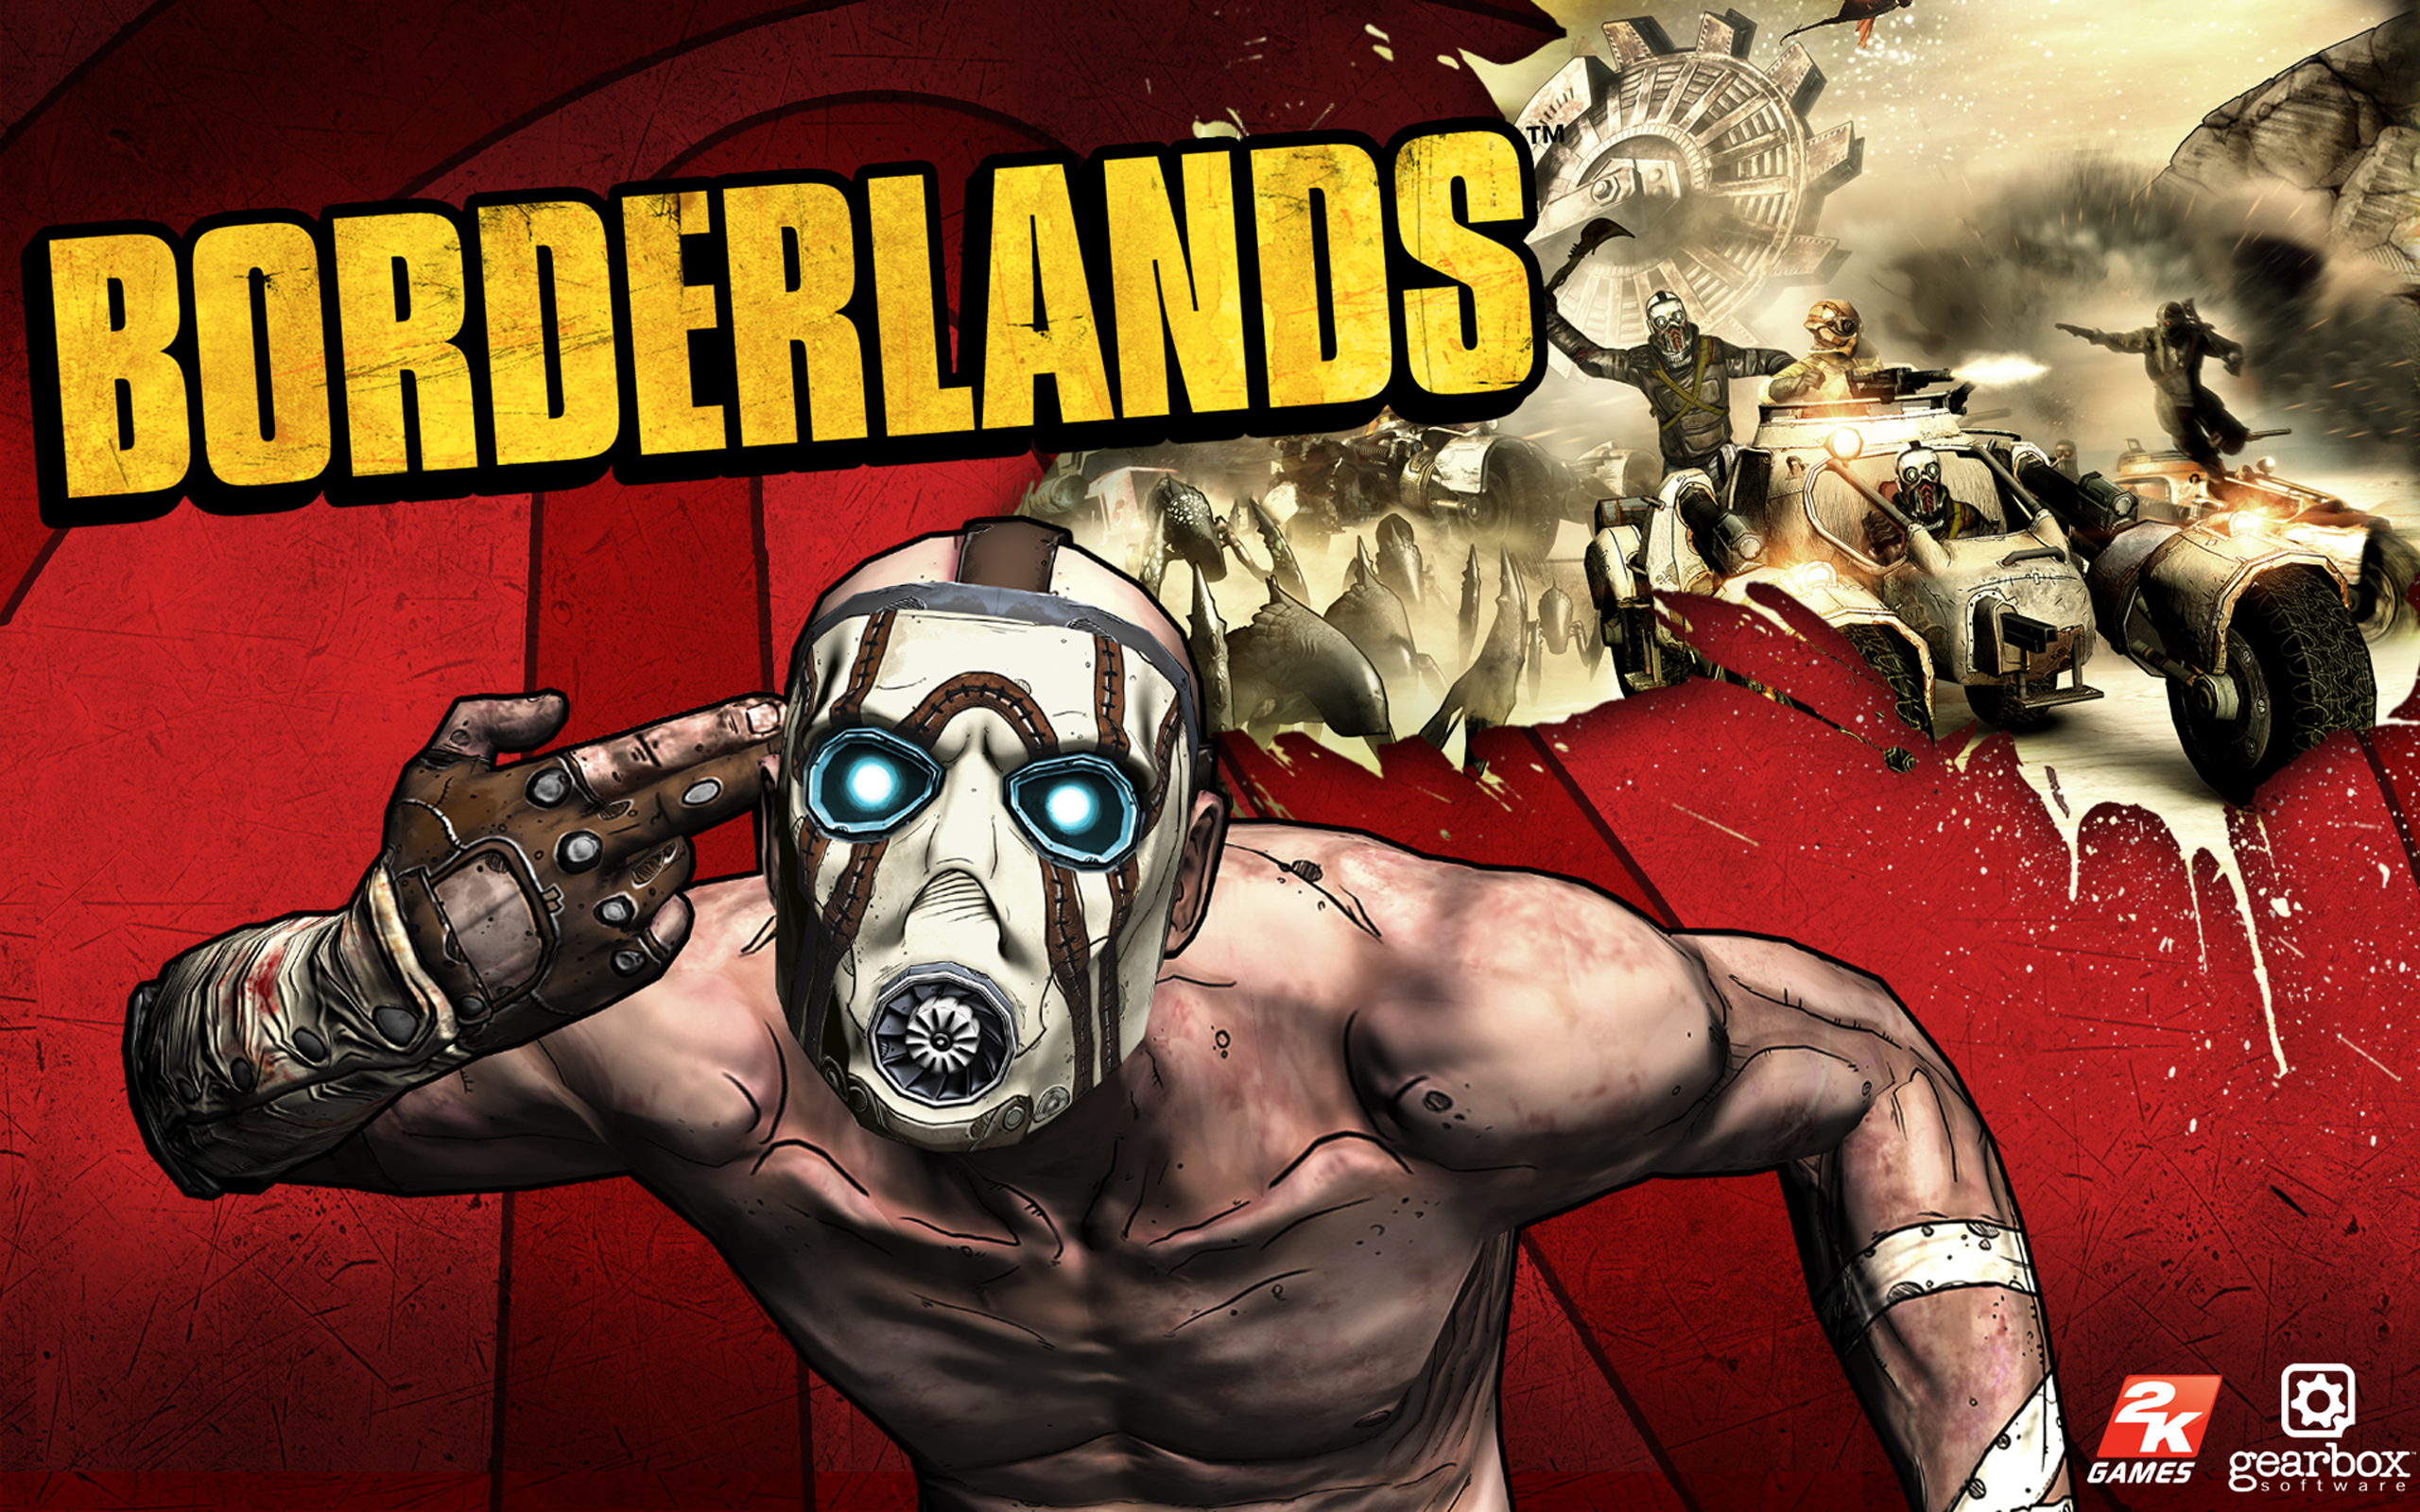 видеоигры, Borderlands, vilains - обои на рабочий стол